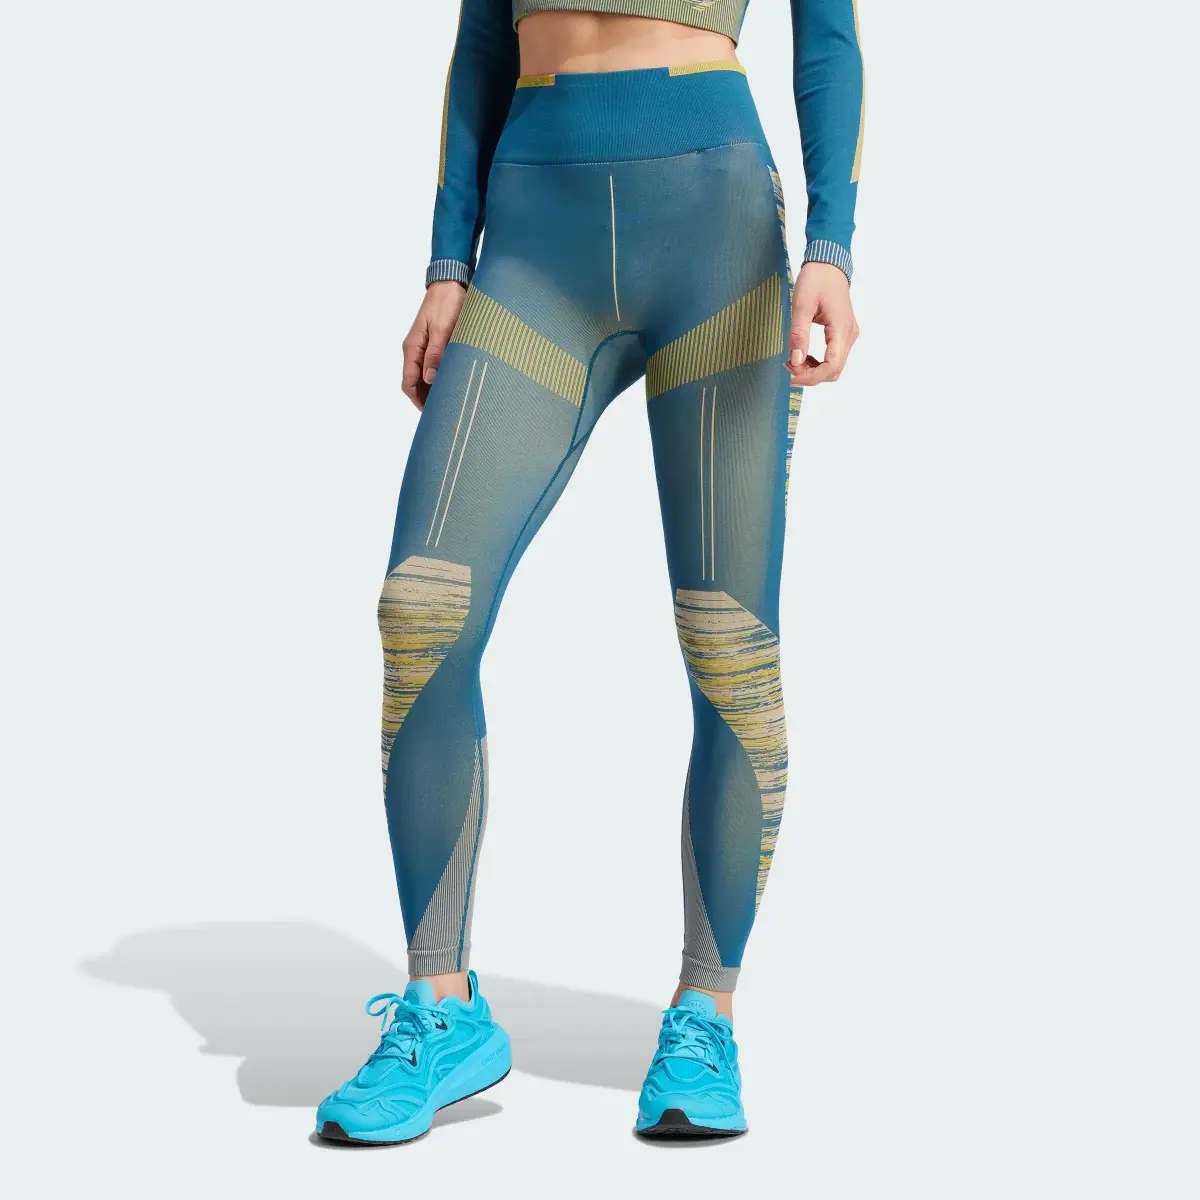 Adidas Legginsy adidas by Stella McCartney TrueStrength Seamless Yoga. 1